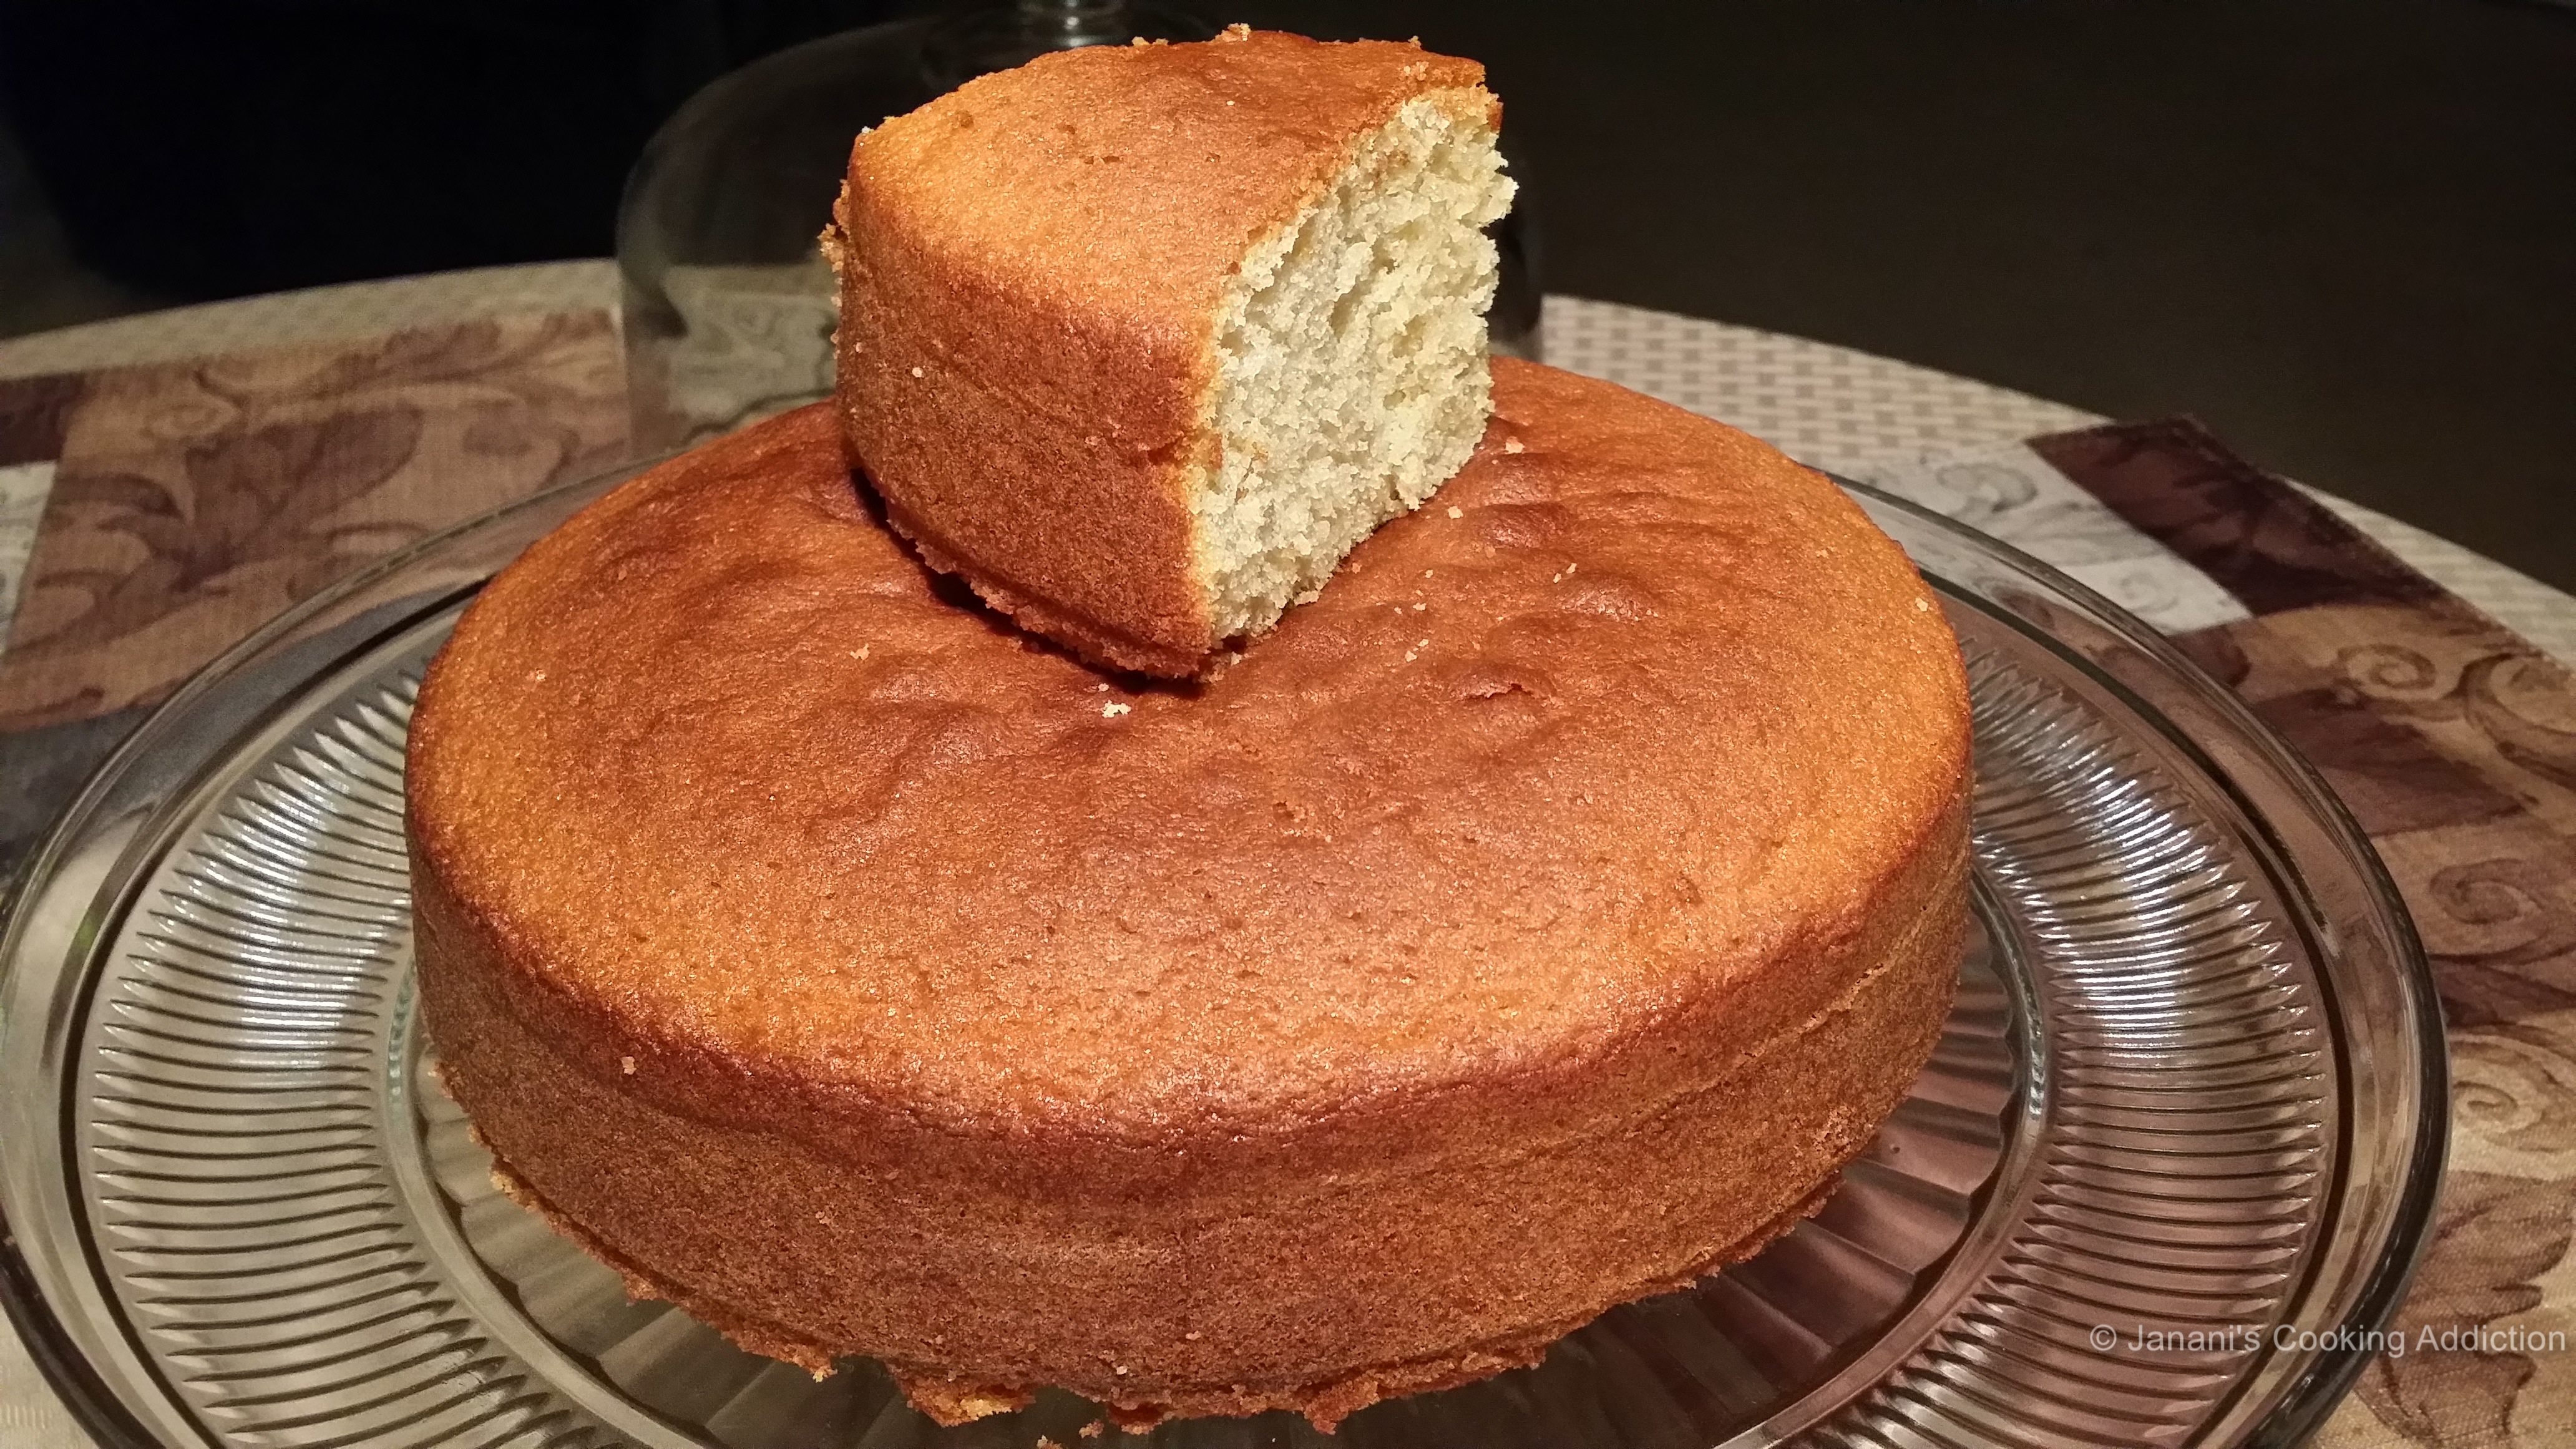 Vanilla Sponge Cake / Pound Cake / Classic Victoria Sponge Cake.